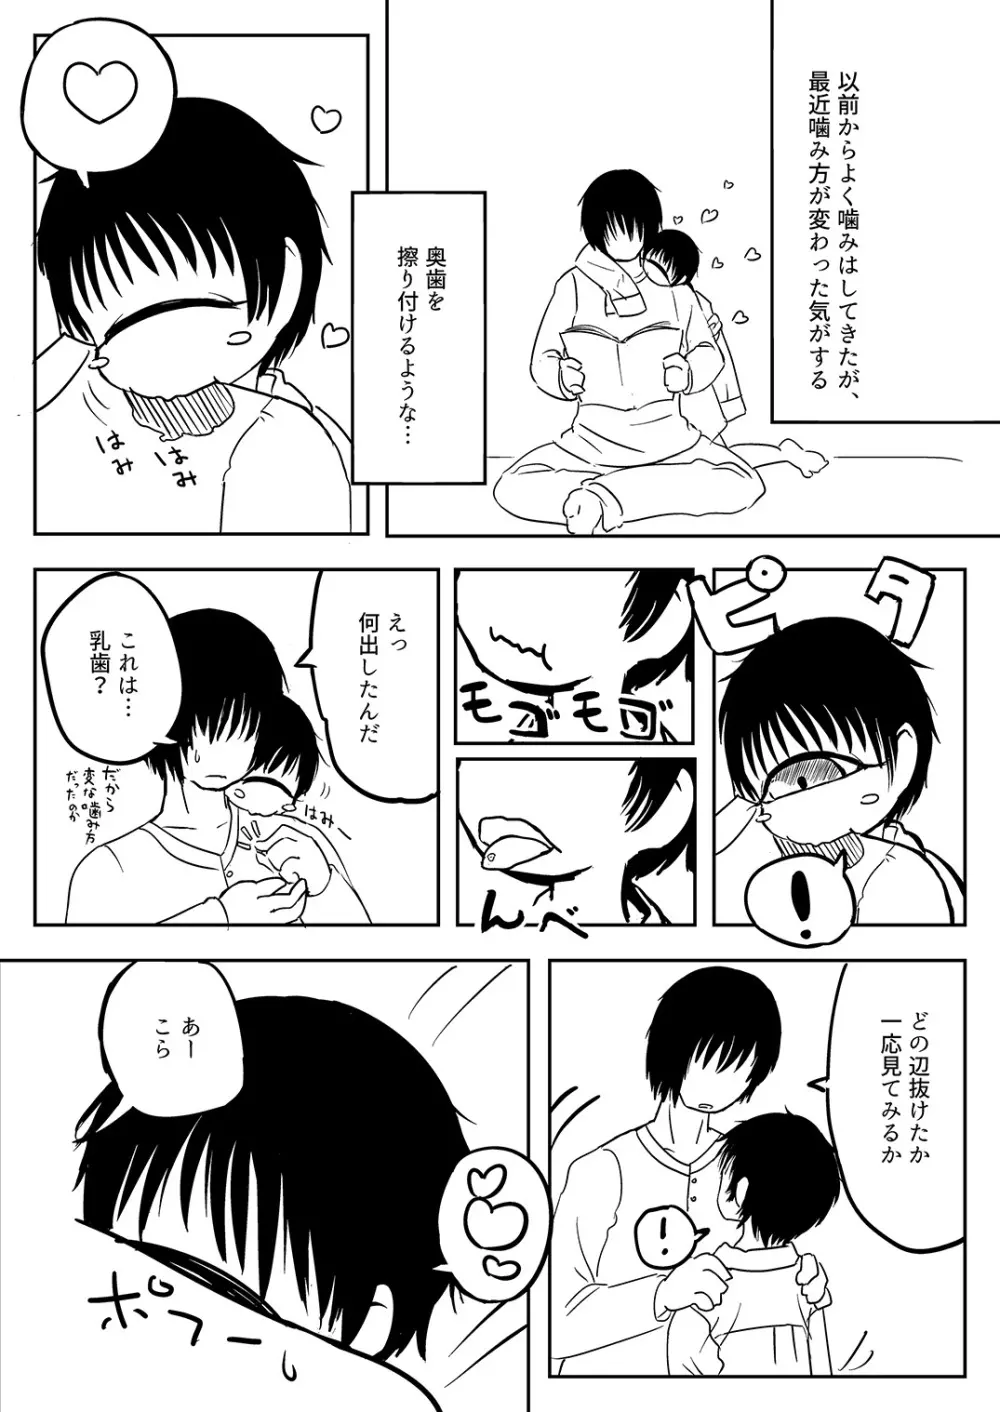 単眼ちゃん拾って飼う漫画 - page33